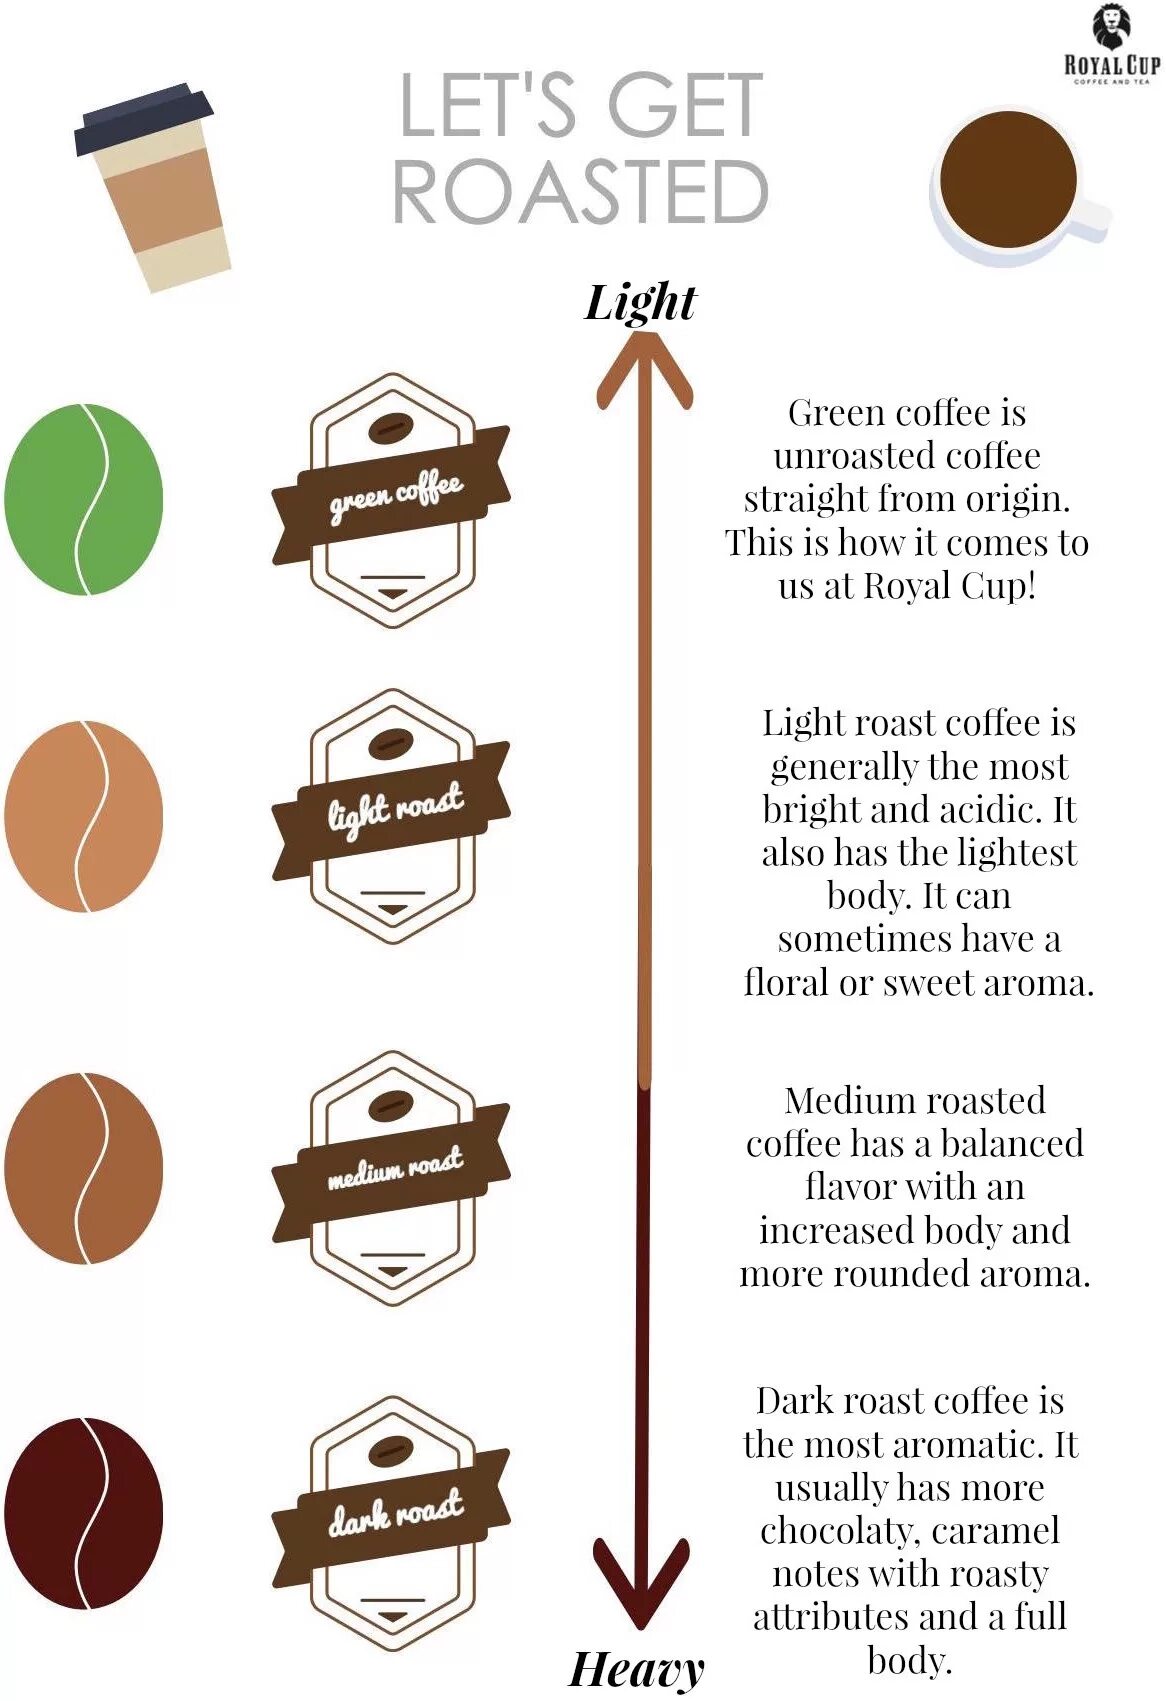 Кофе Roast. Light Roast кофе. Roast Coffee цвет. Coffee перевод. Пить кофе перевод